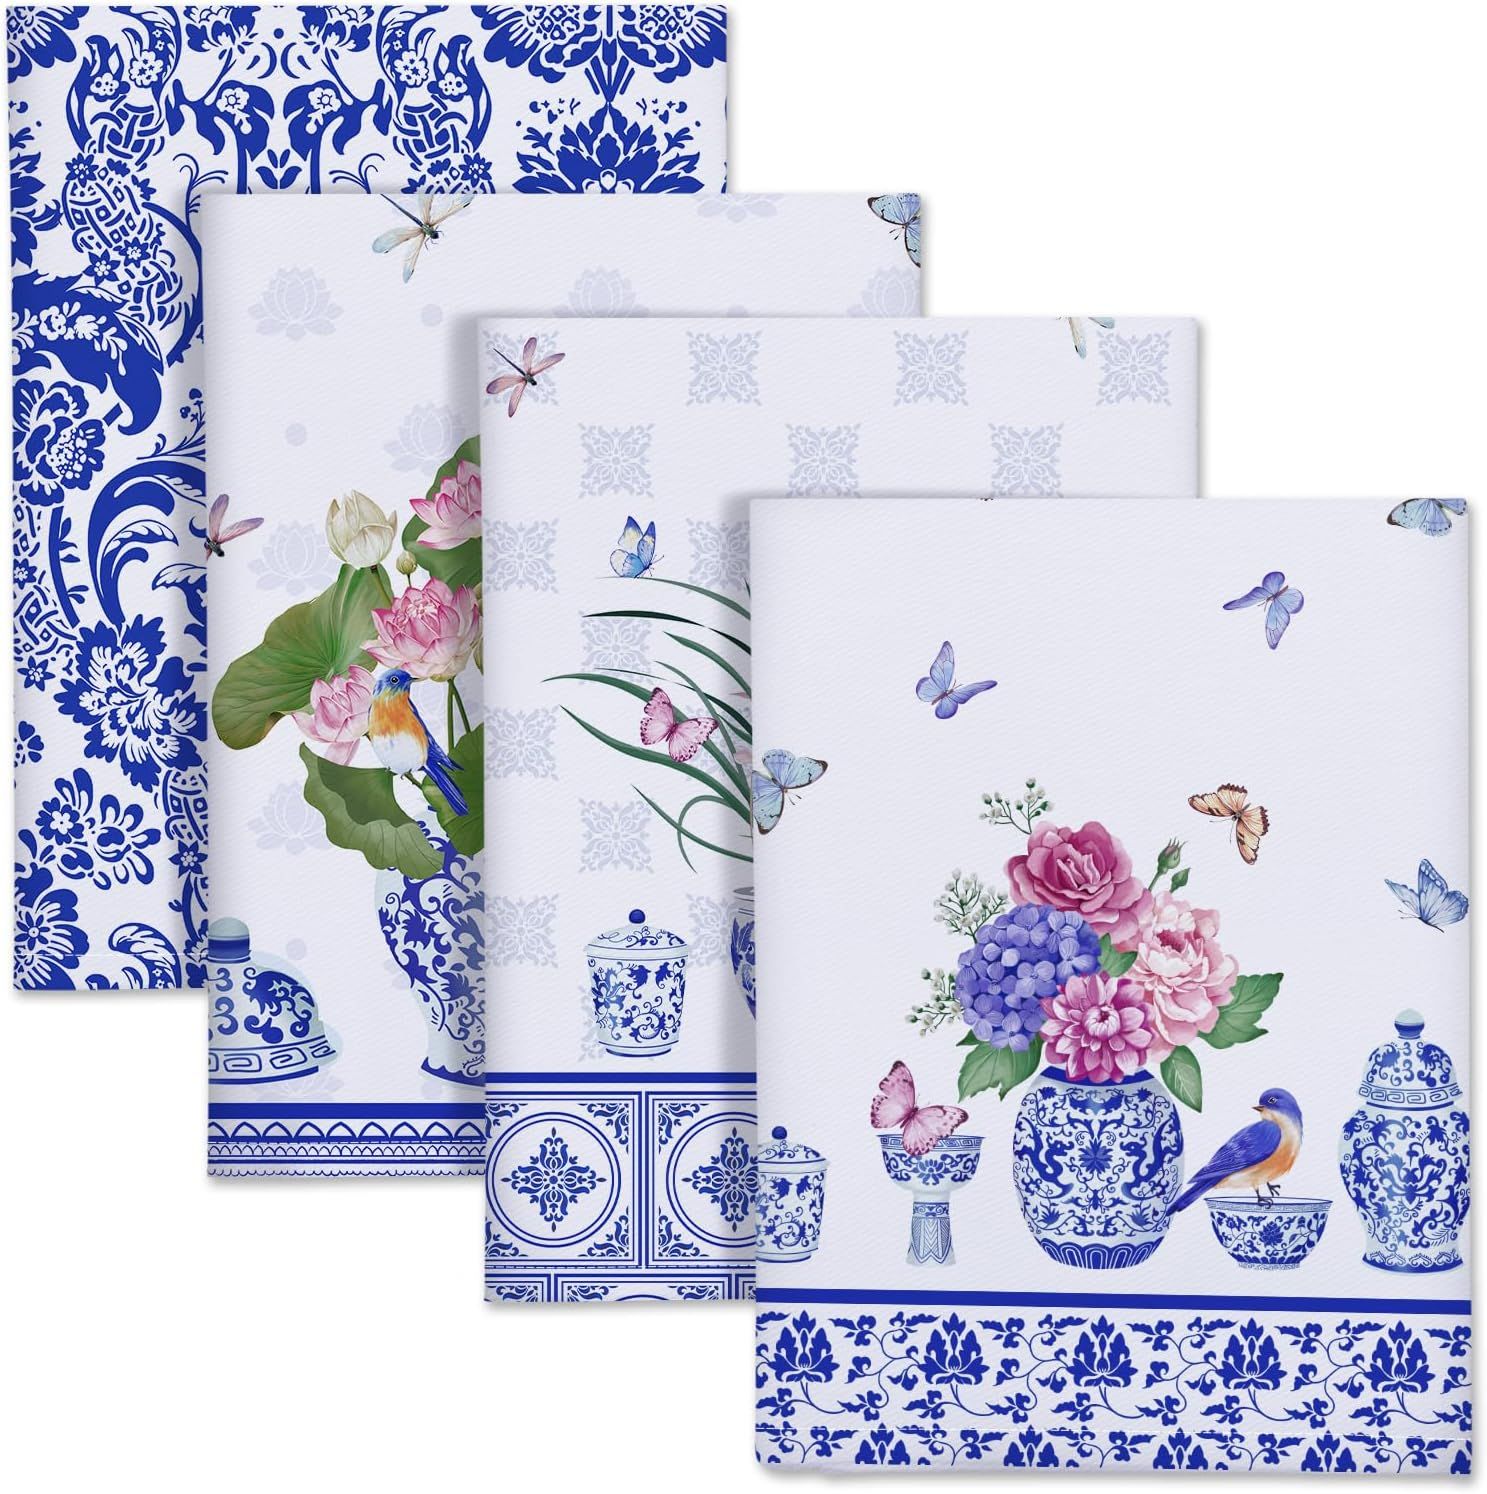 Arquiel Blue and White Porcelain Kitchen Towel 100% Cotton Quick Dry Dish Towels 20 x 27.5inch, D... | Amazon (US)